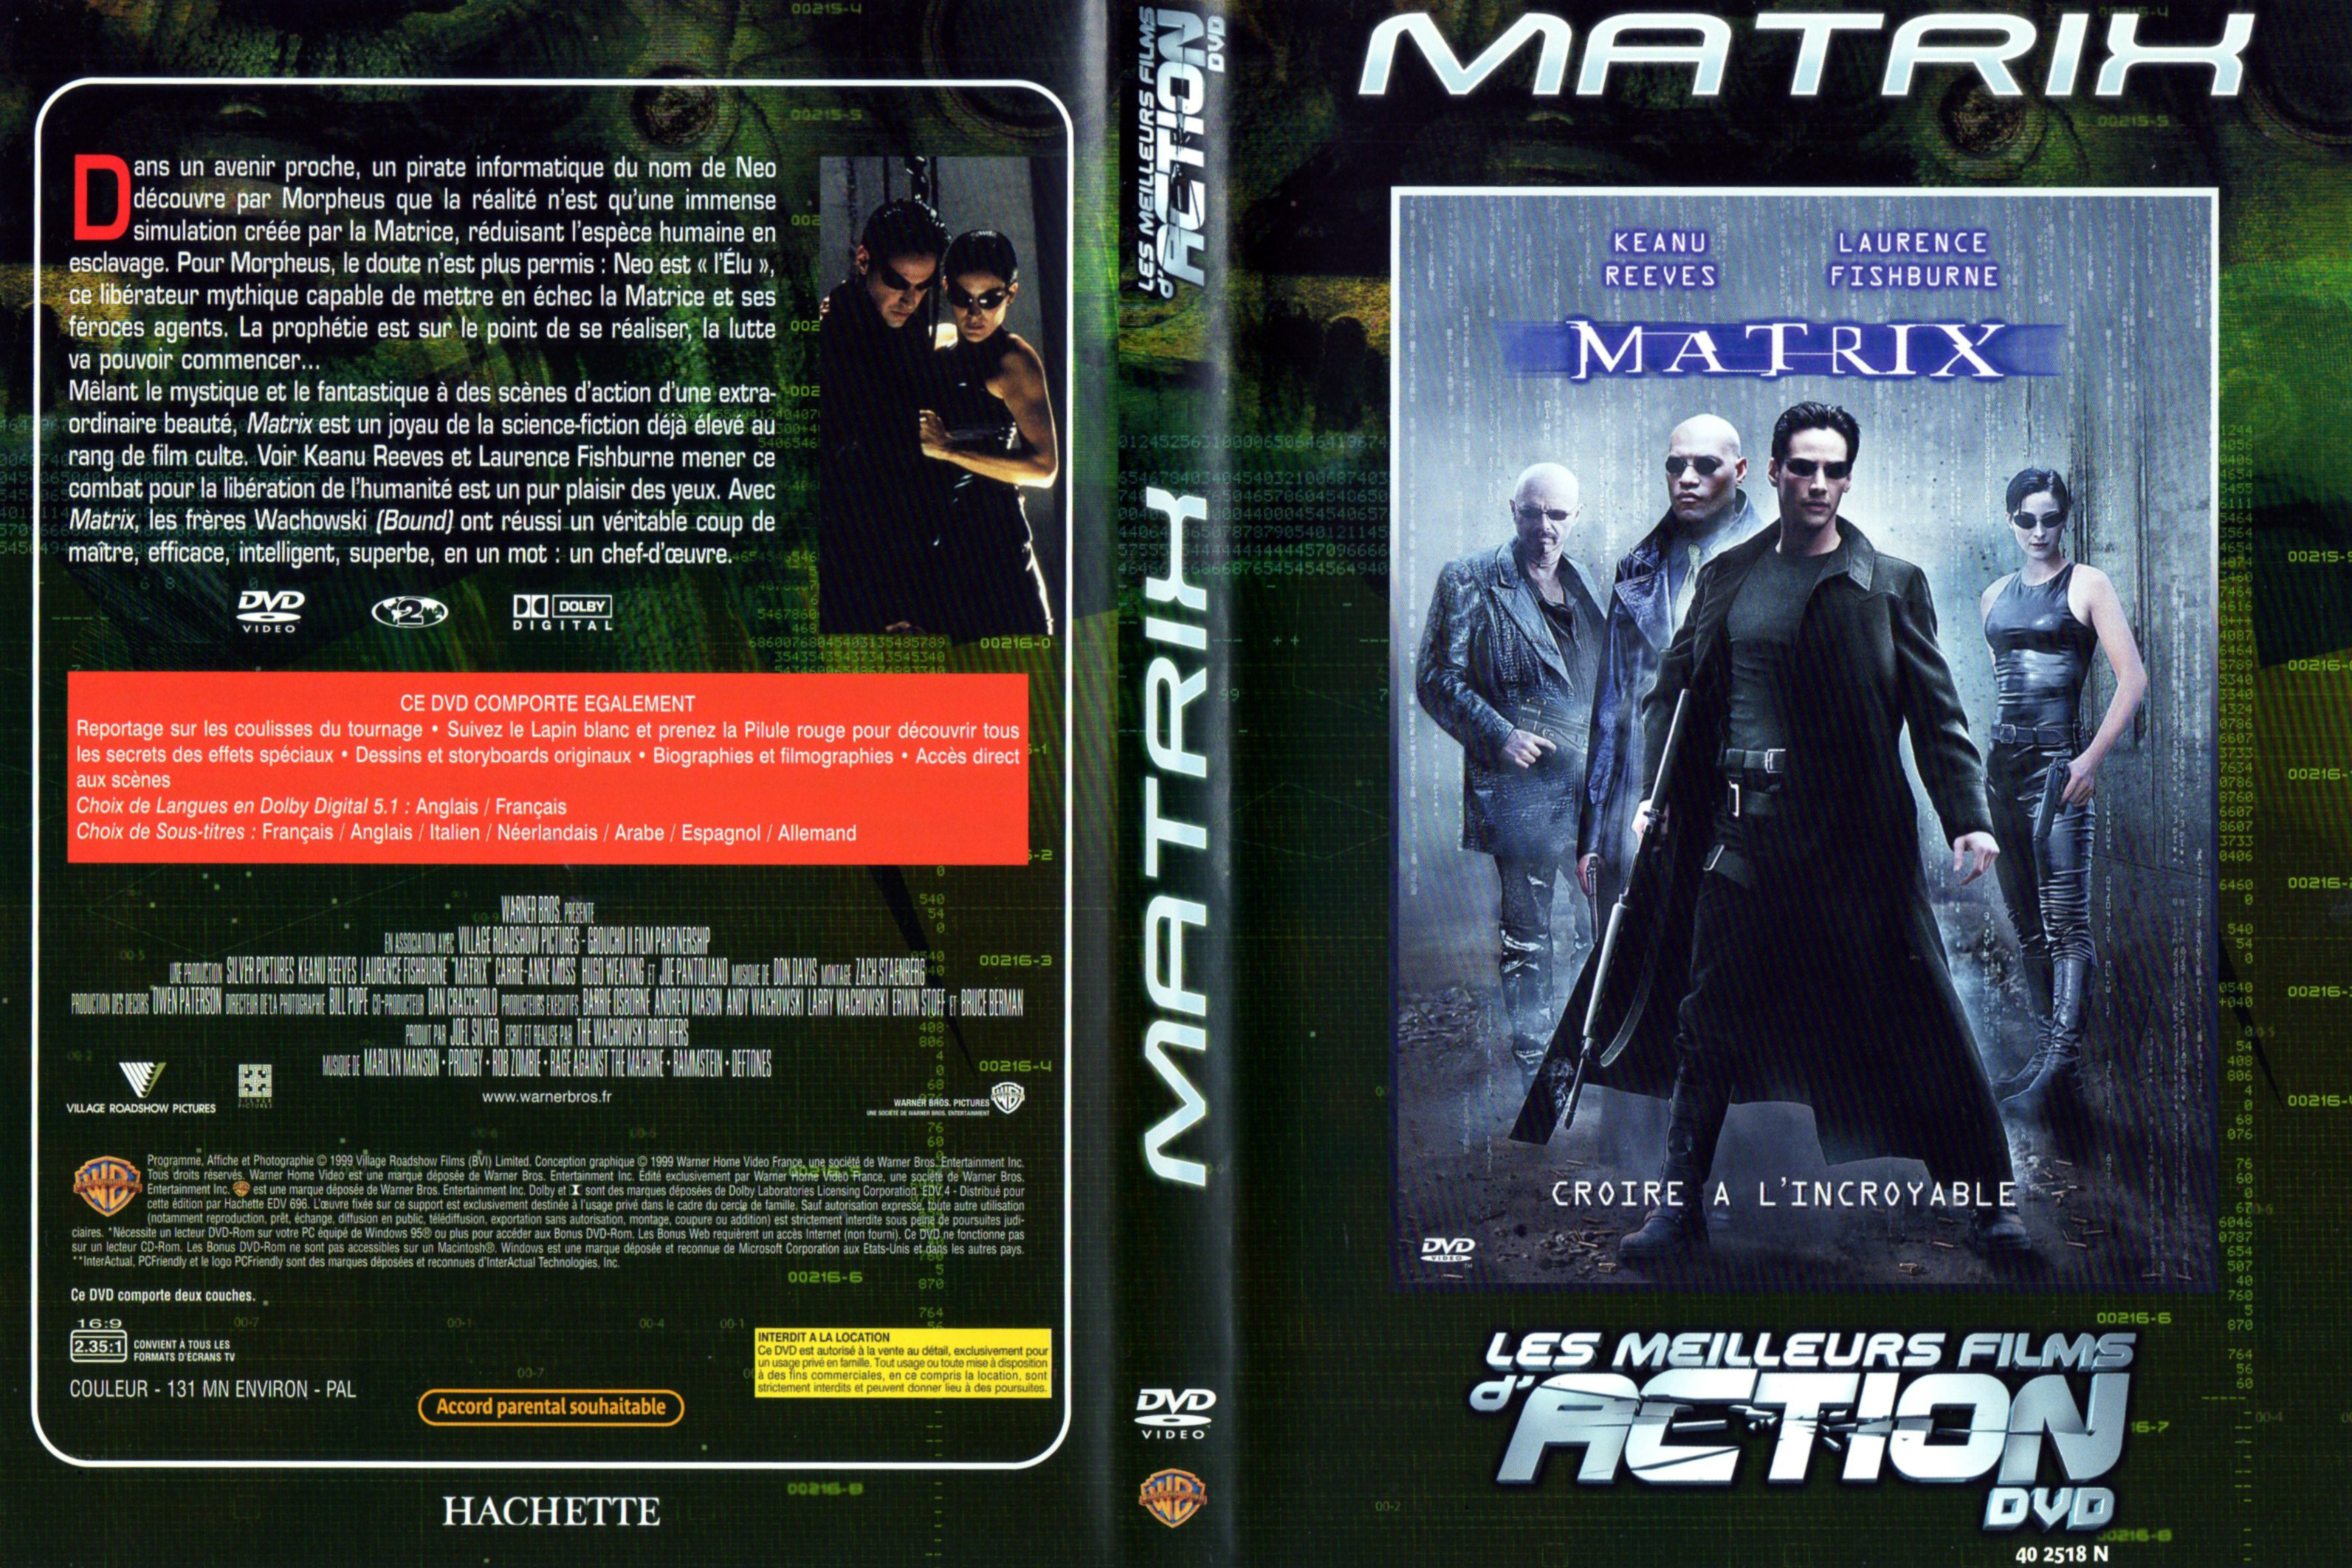 Jaquette DVD Matrix v2